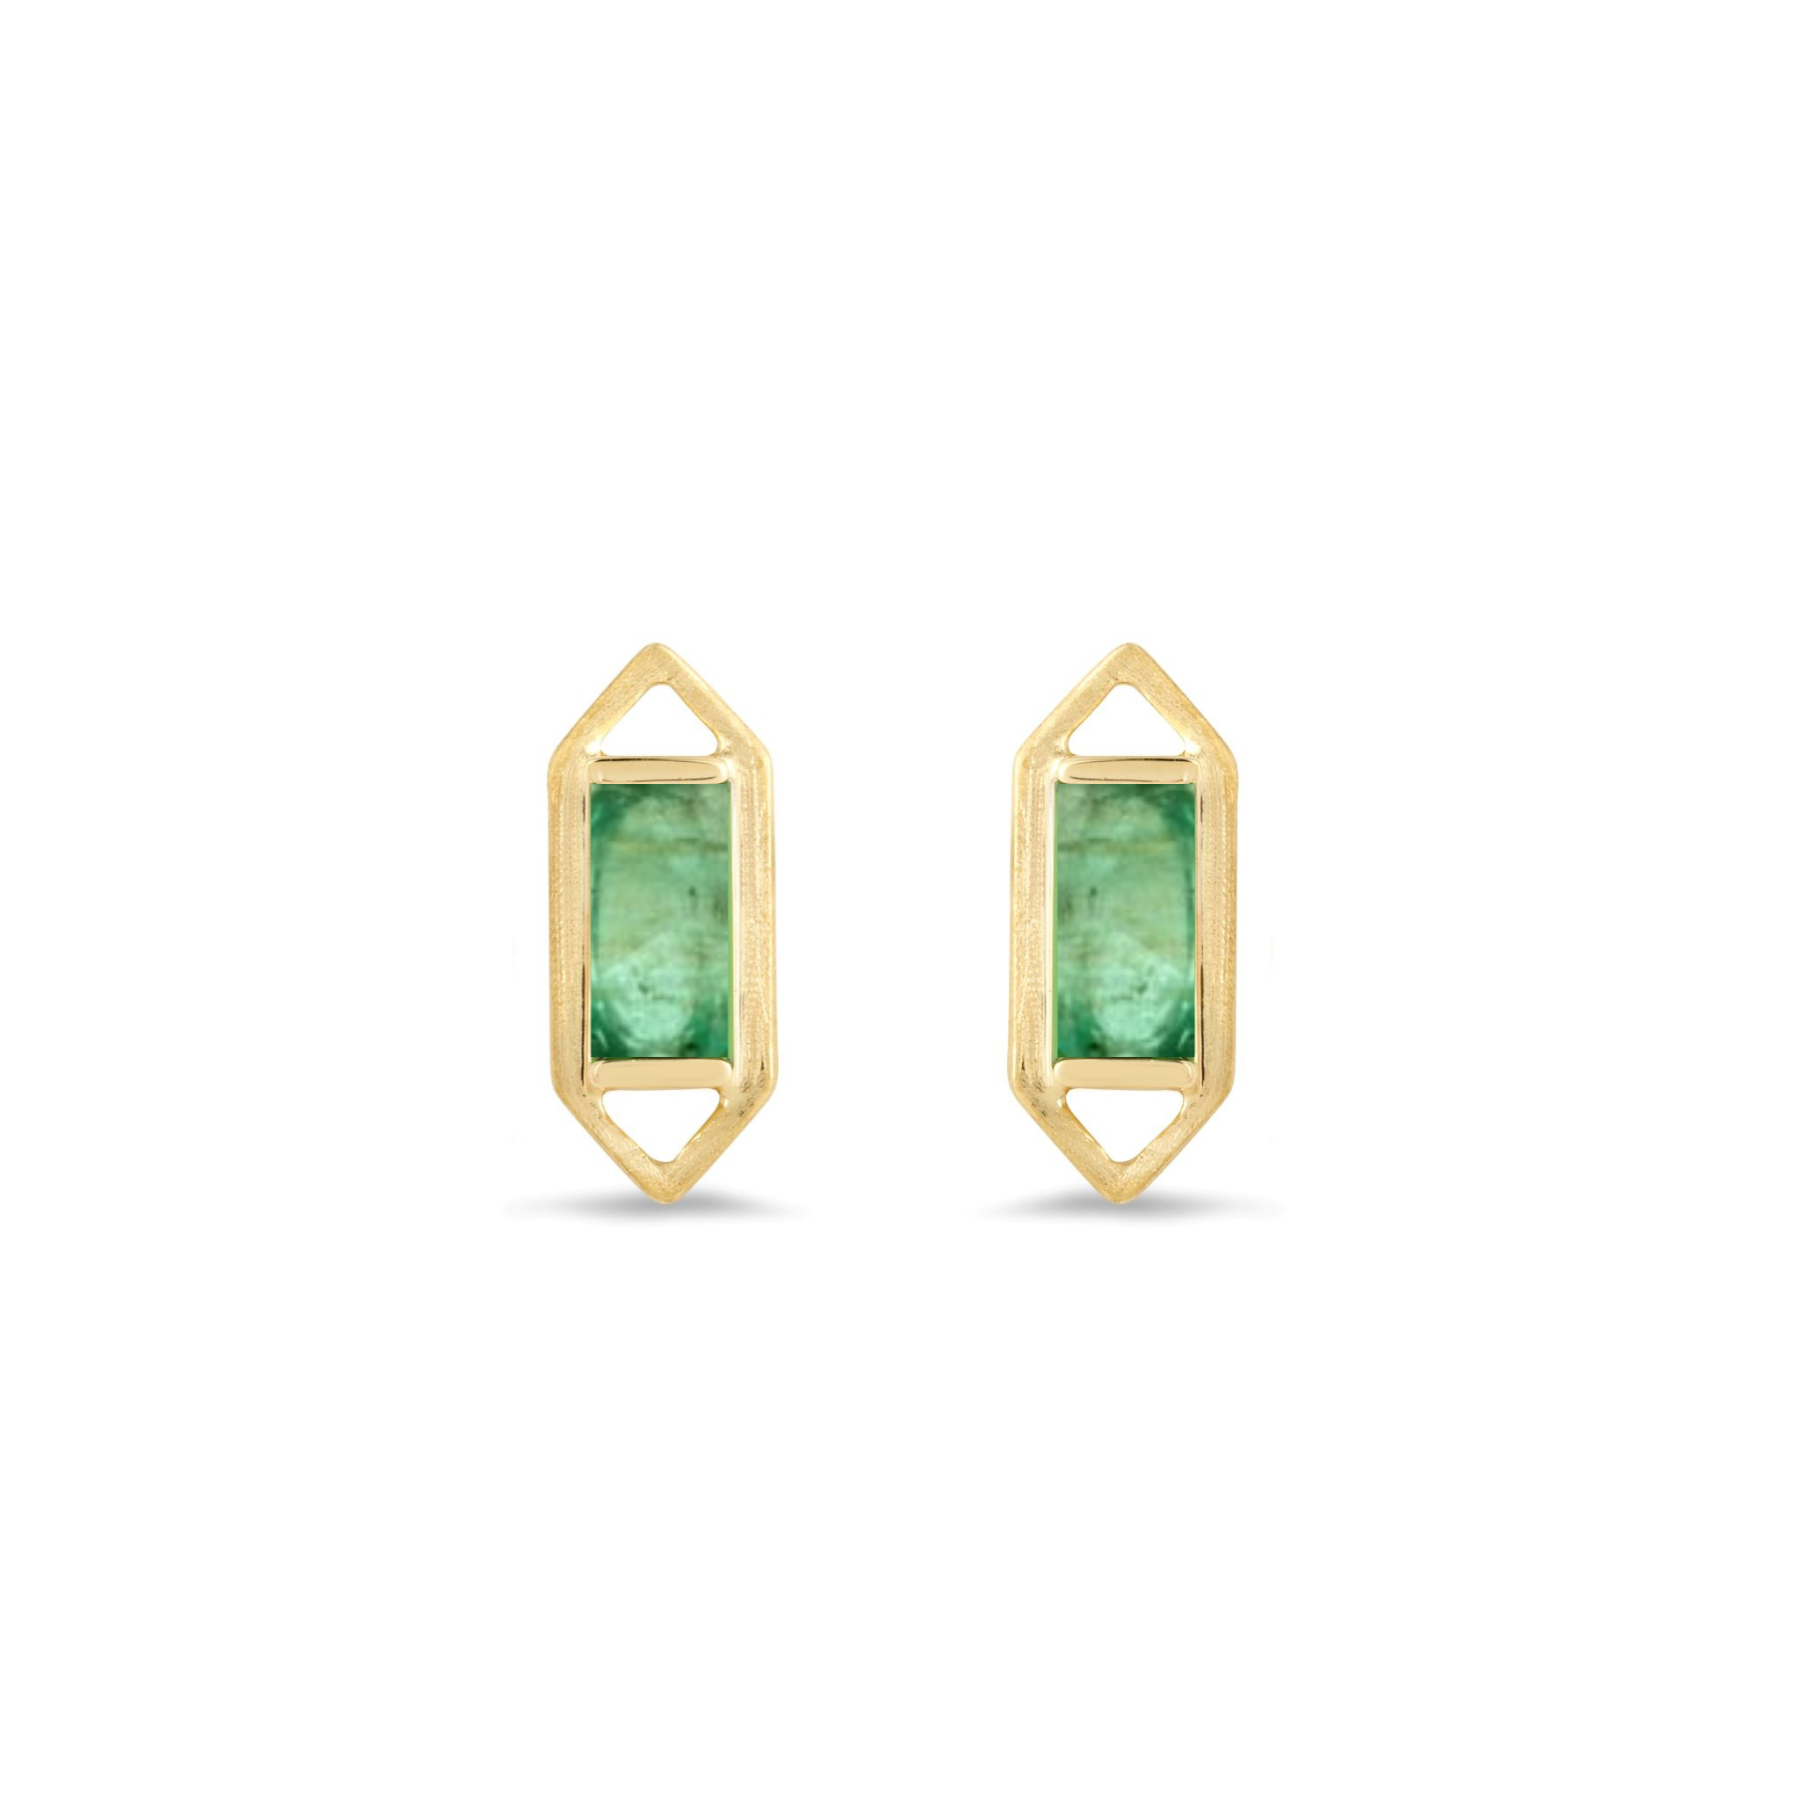 Modern Edge Baguette Zambian Emerald Geometric Stud Earrings